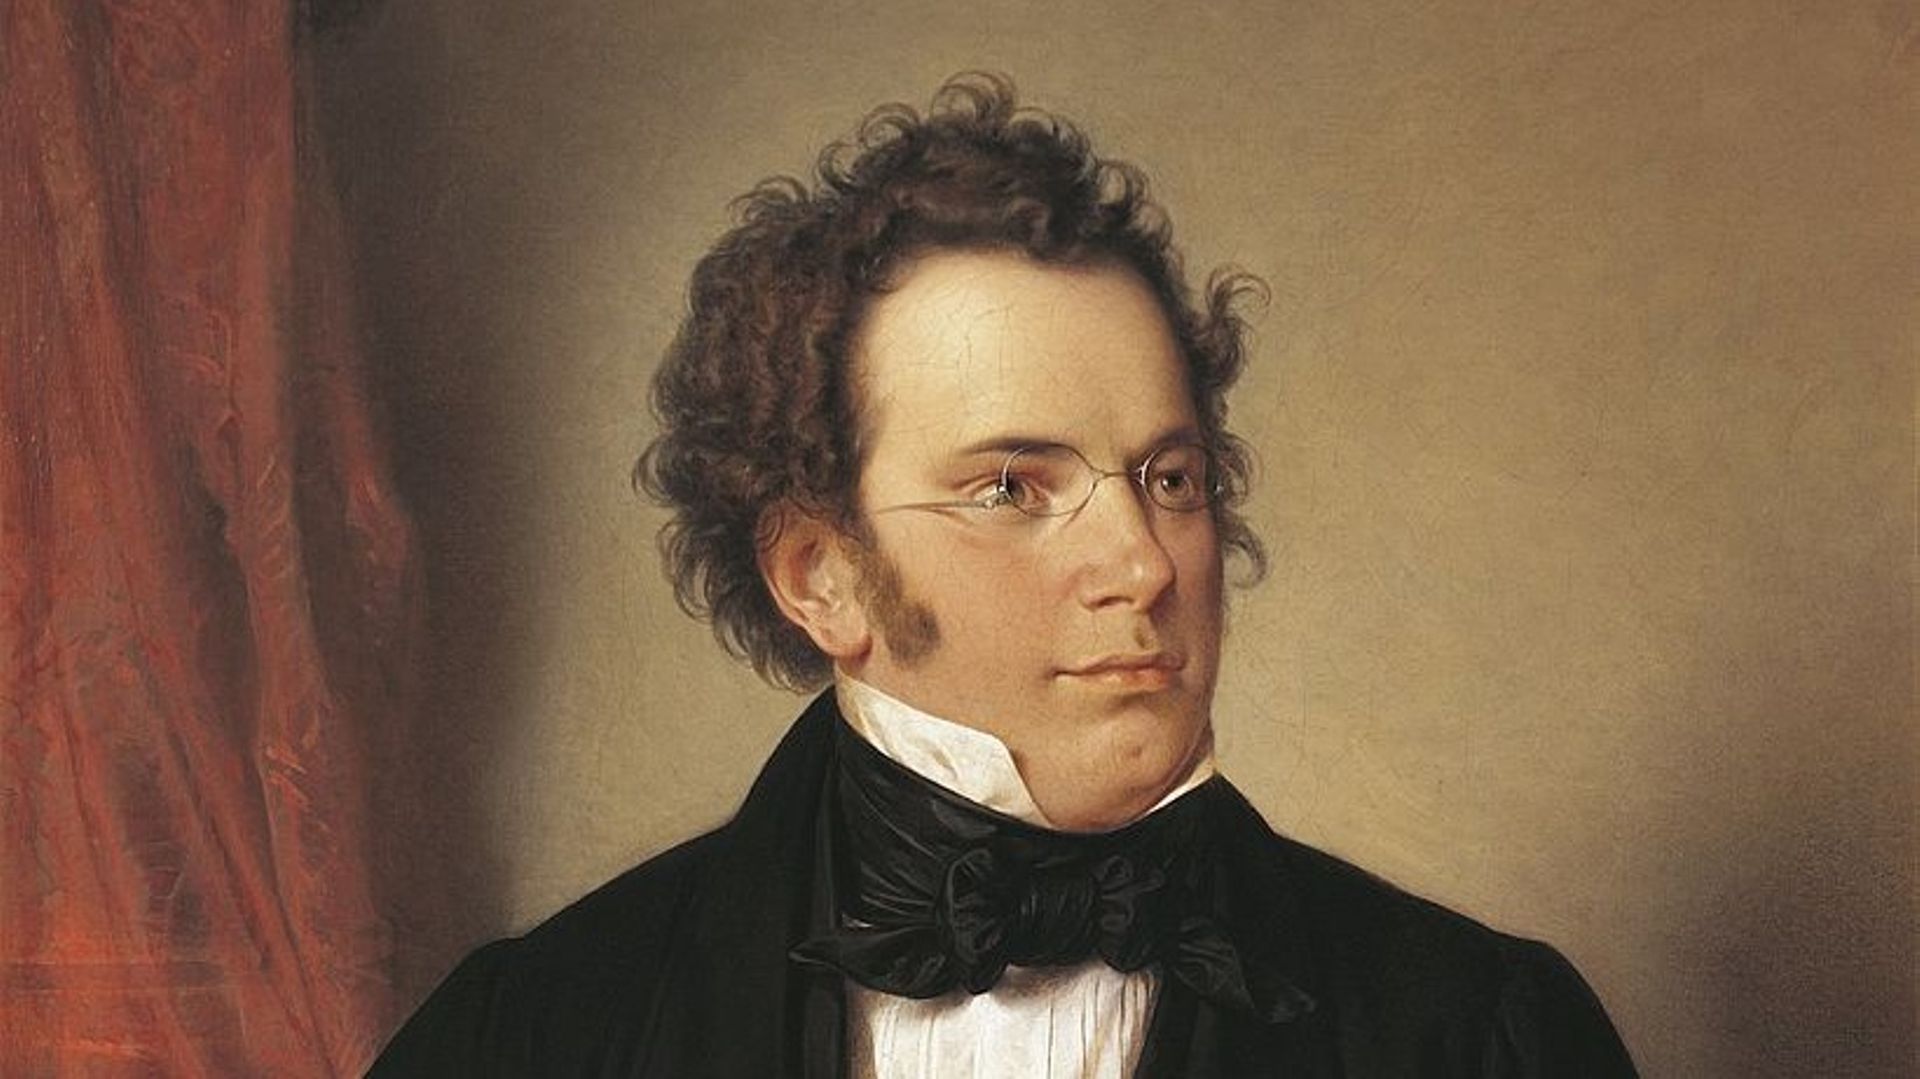 Franz Peter Schubert, portrait réalisé par Wilhelm August Rieder (1796-1880) en 1875.